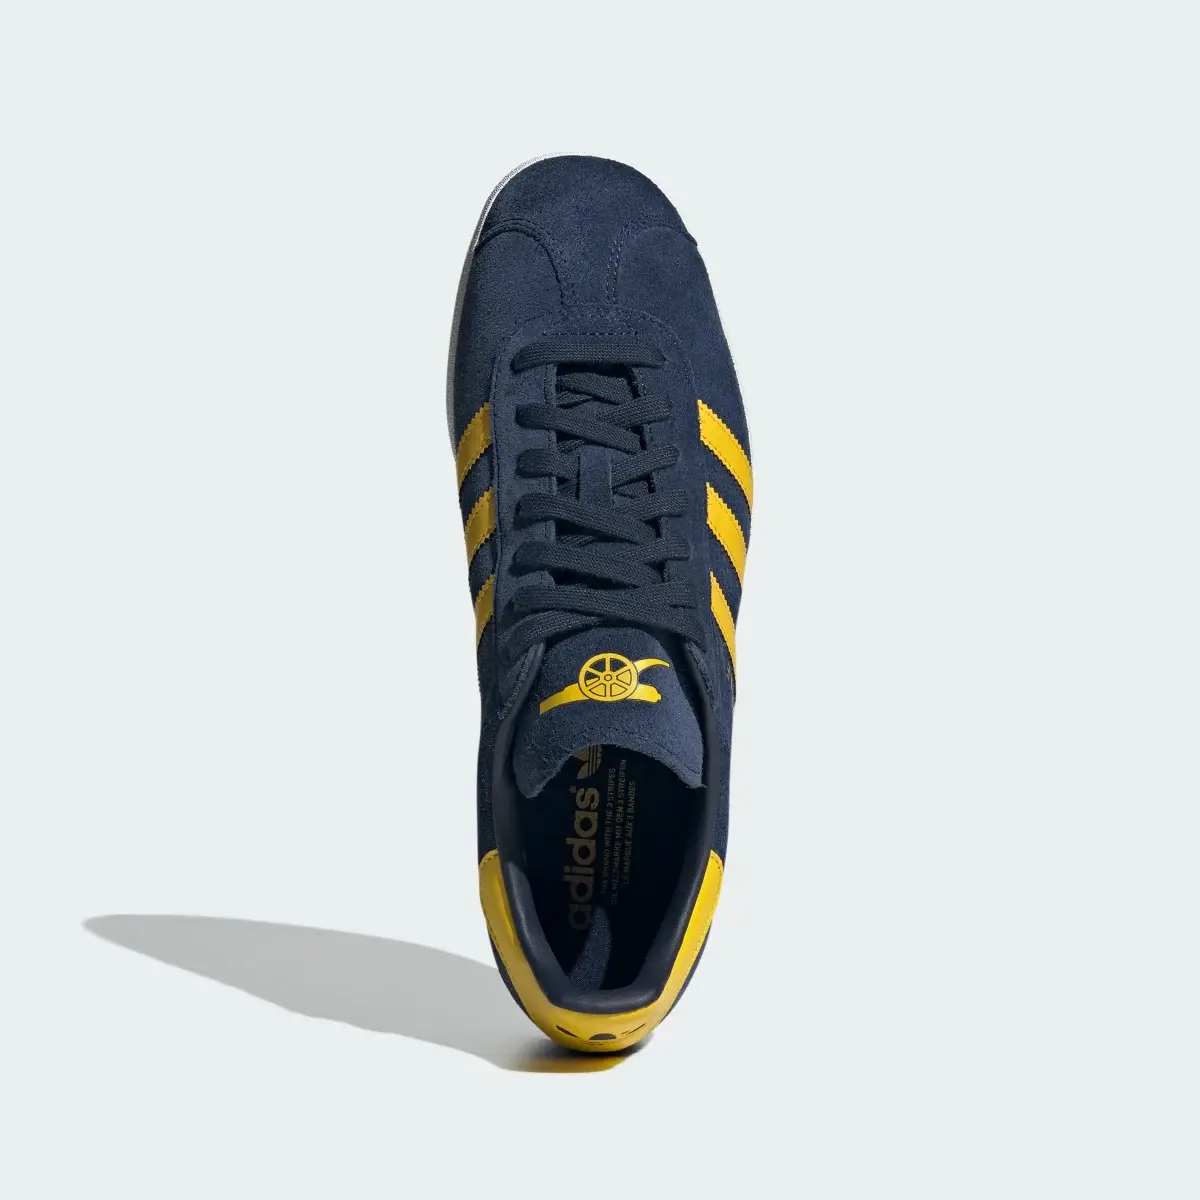 Adidas Gazelle Arsenal Shoes. 3